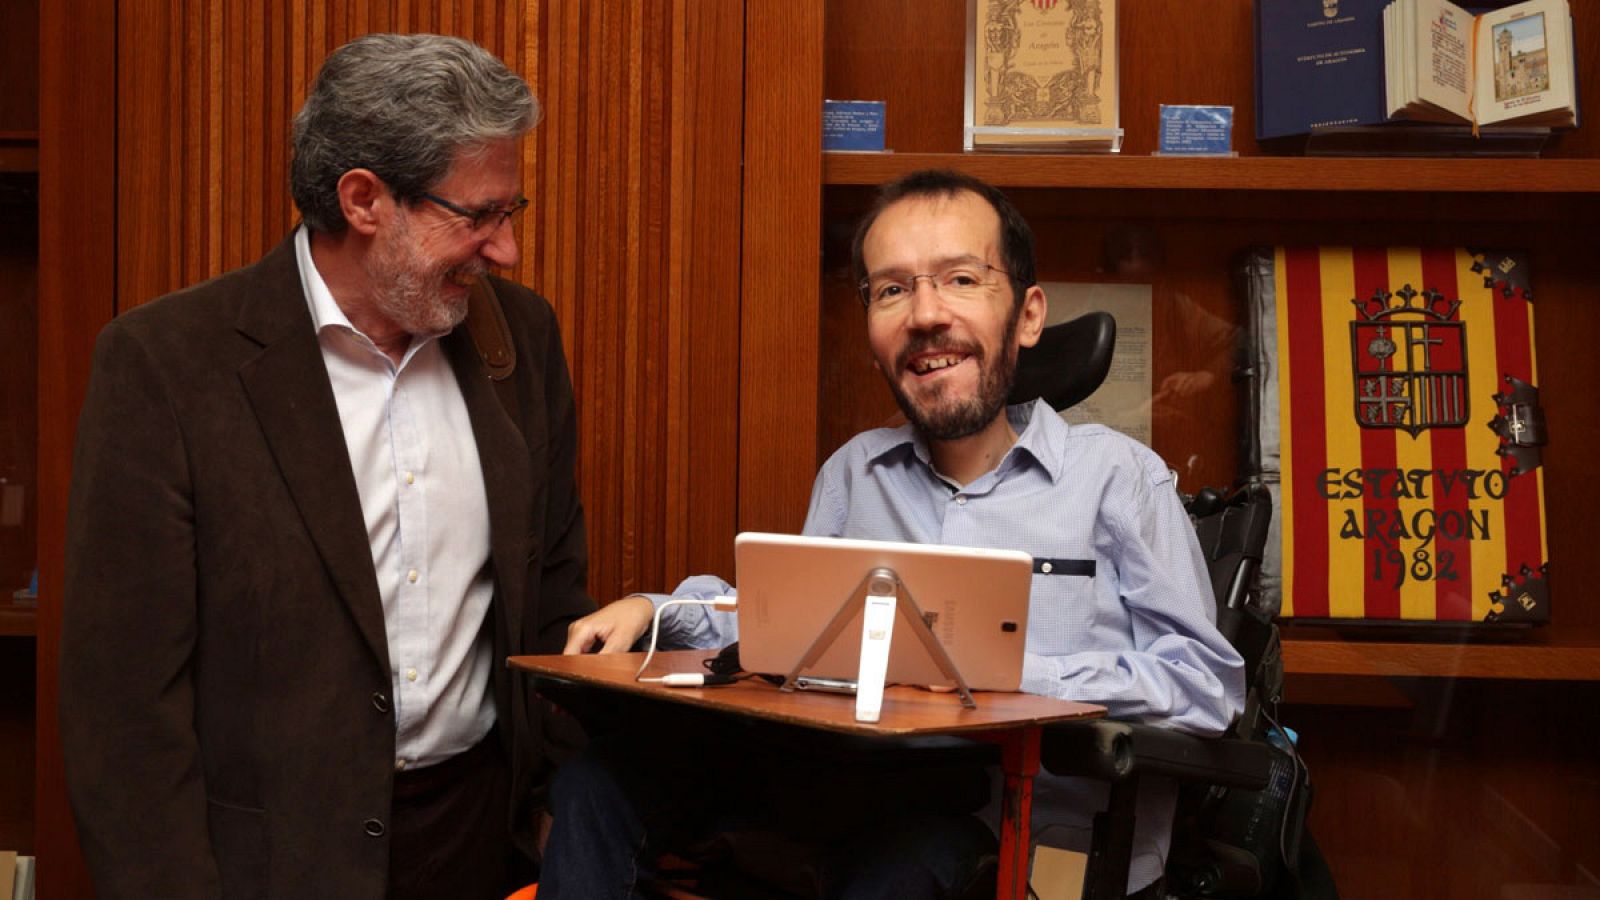 El secretario de organización de Izquierda Unida Federal Adolfo Barrena y su homólogo de Podemos Pablo Echenique reunidos en Zaragoza